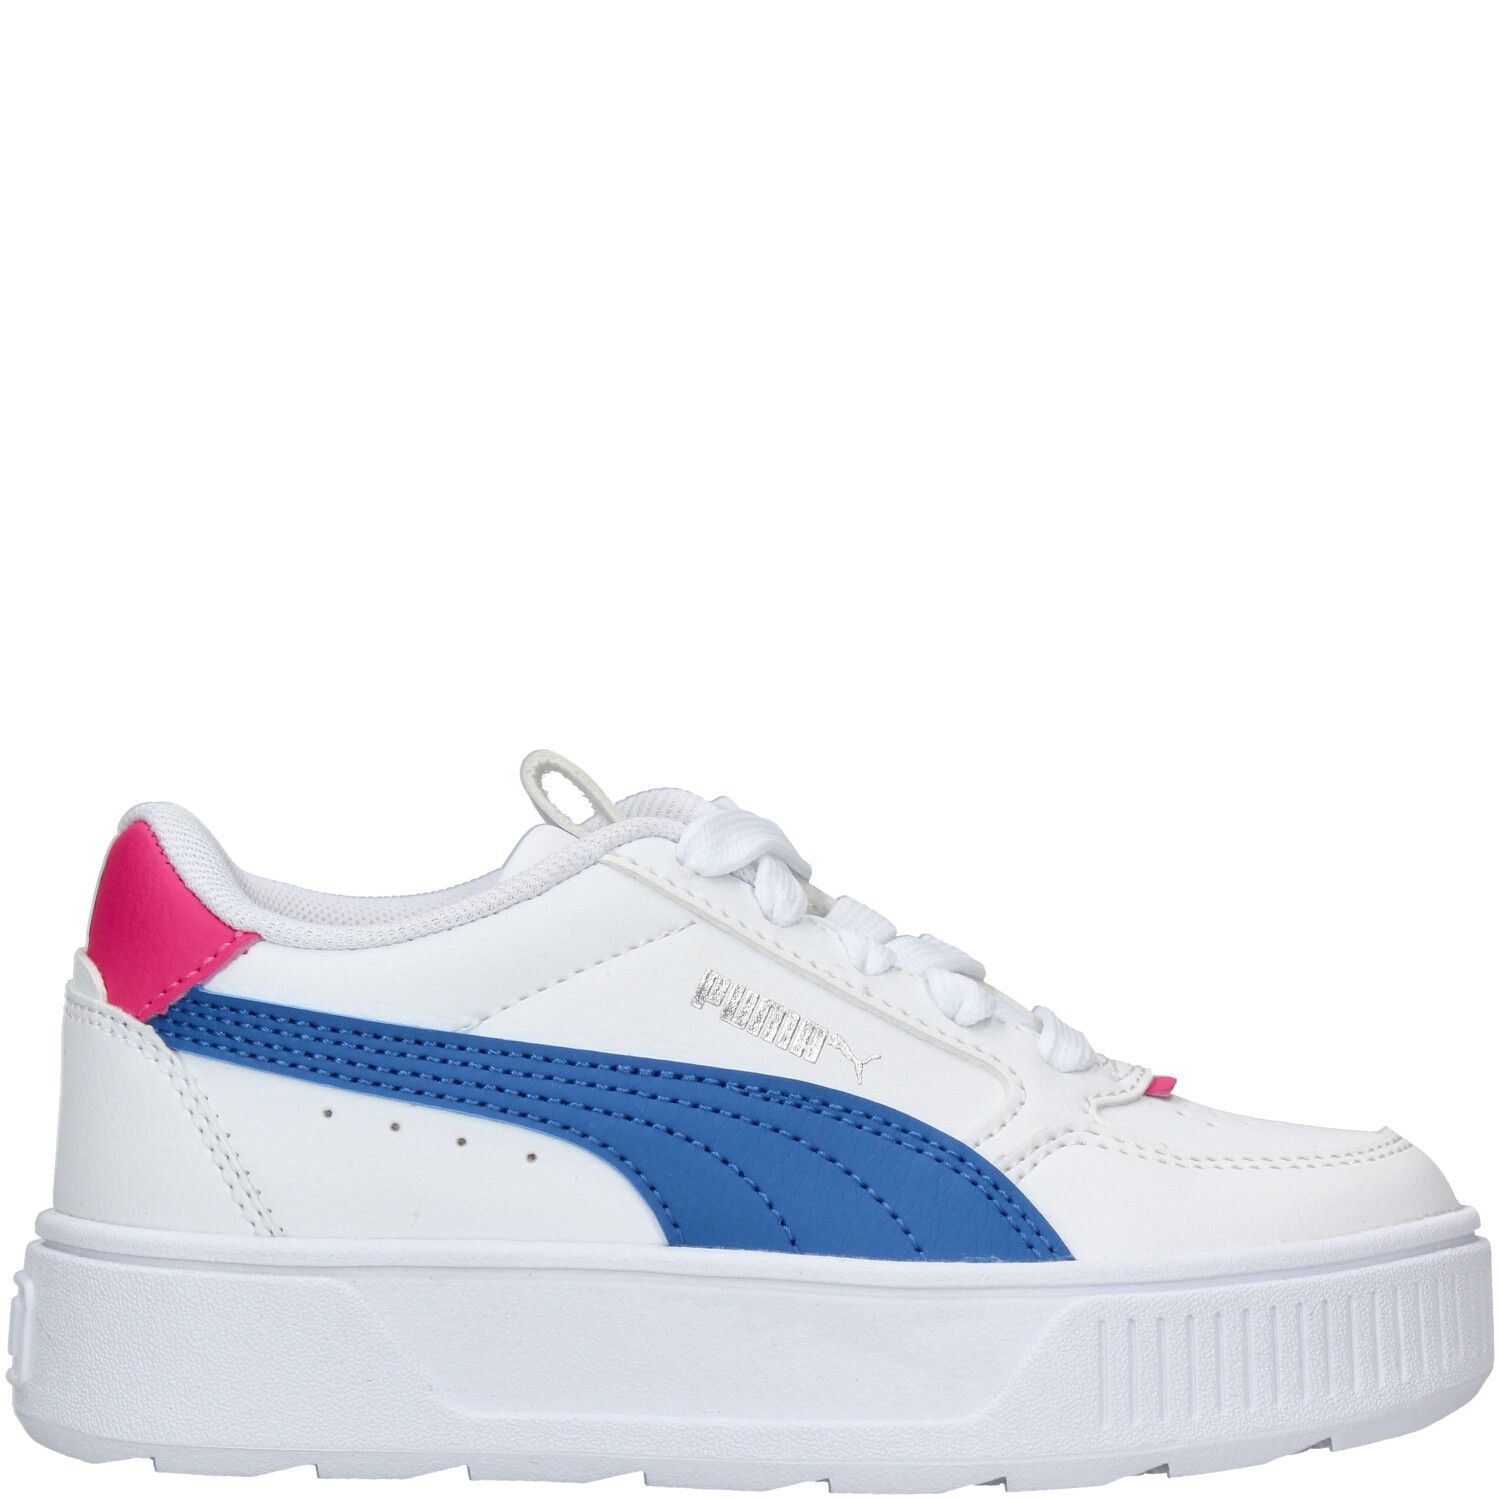 Puma Karmen Rebelle Sneaker Meisjes Wit-Blauw-Roze